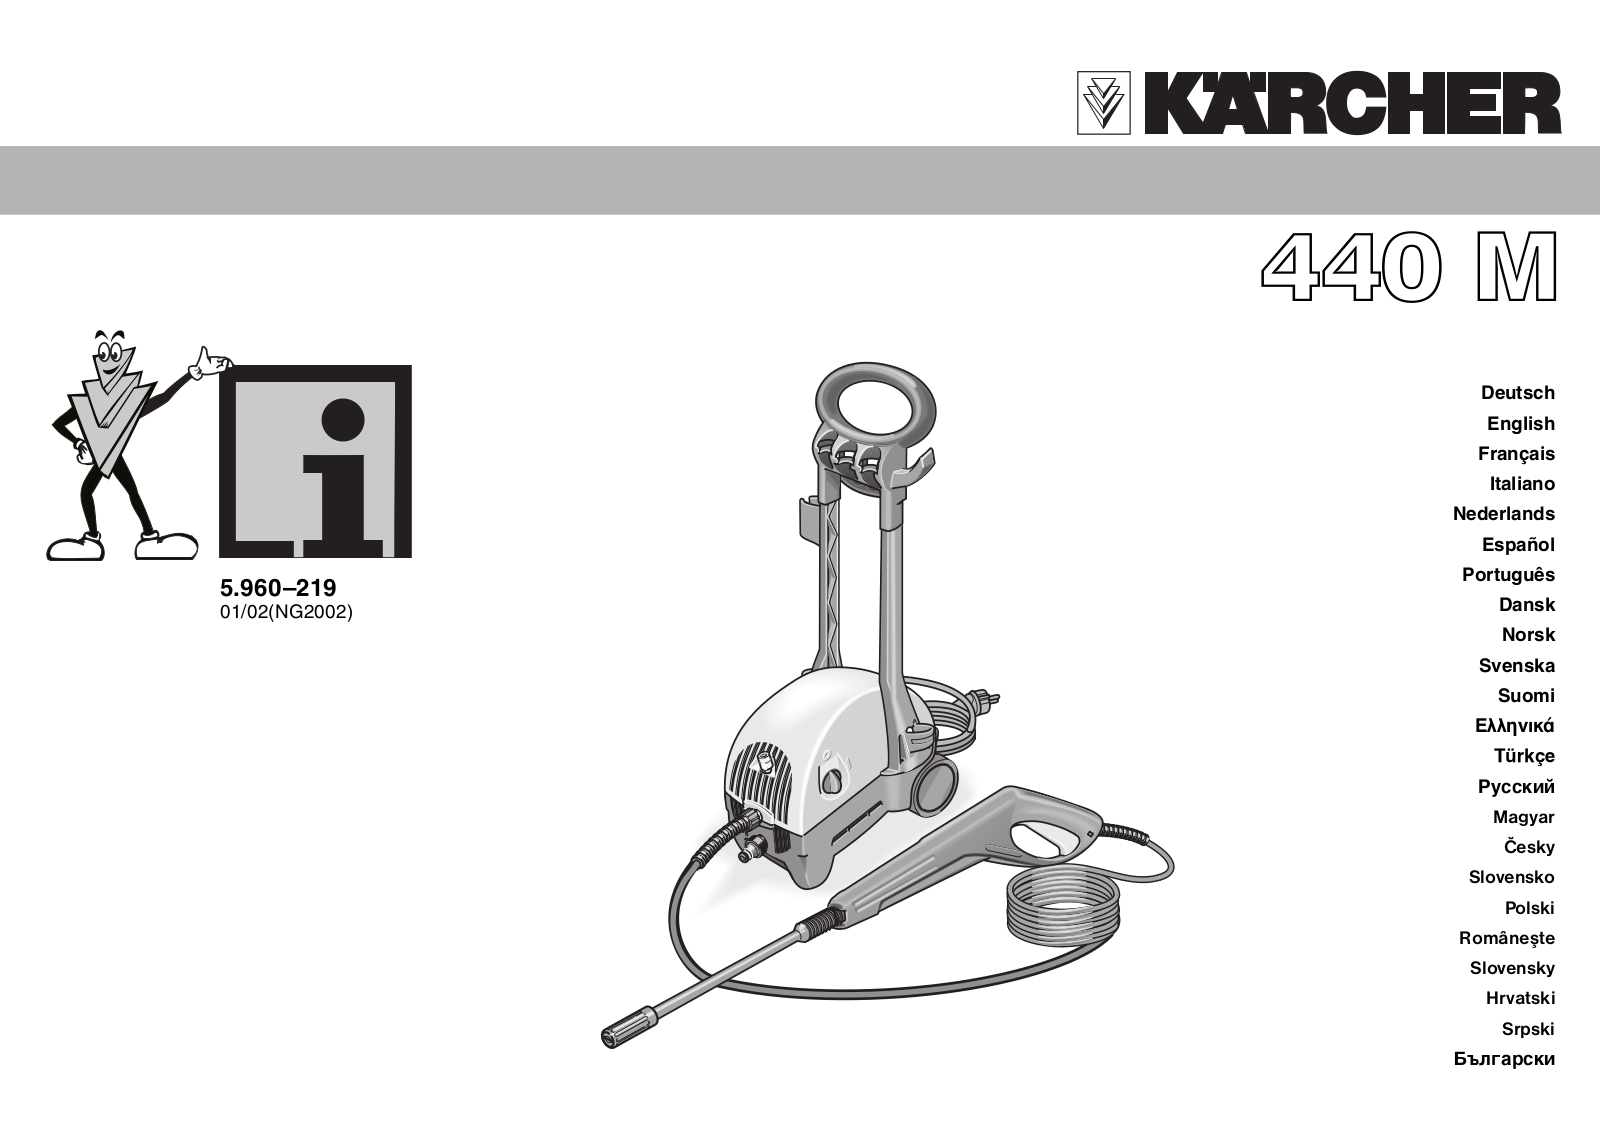 Karcher 440 M Manual